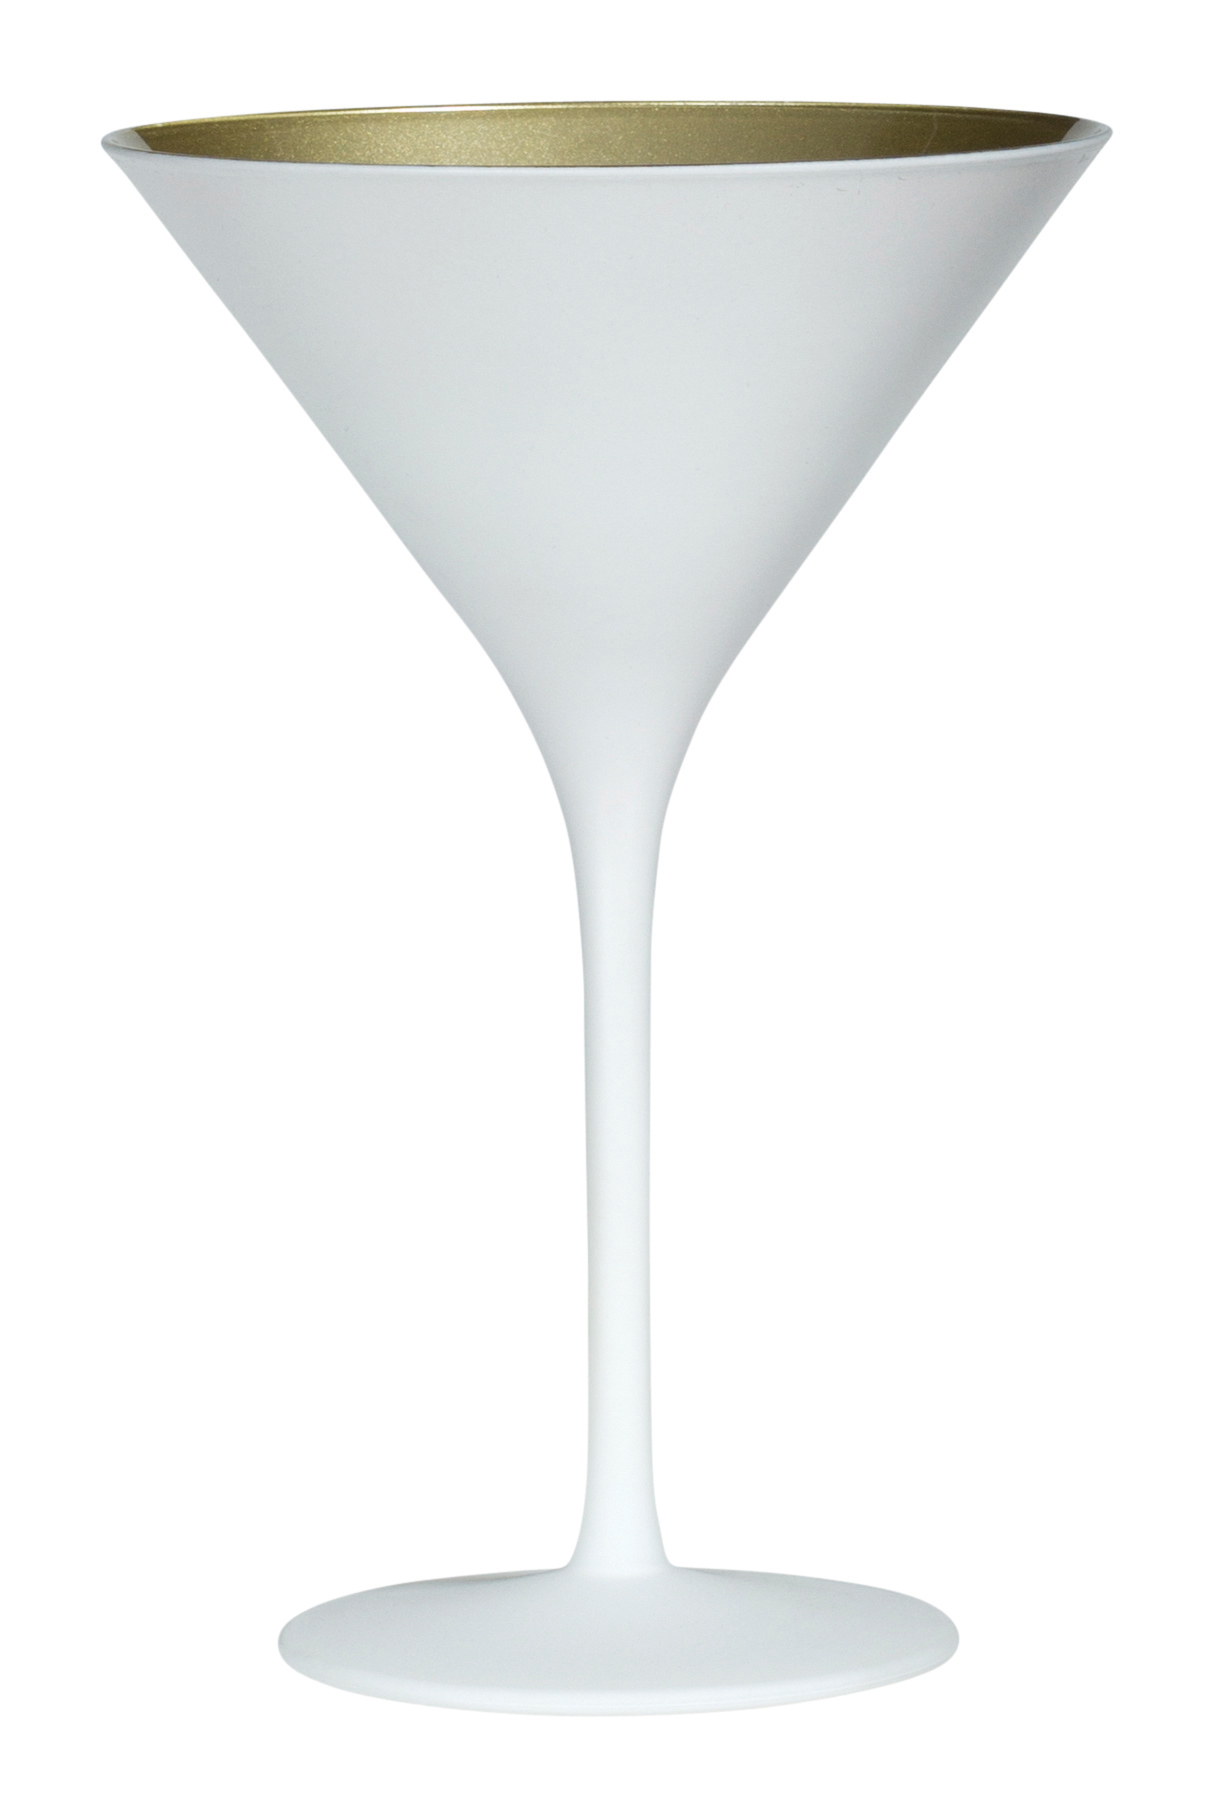 Martini glass, matt white/gold, Elements Stölzle - 240ml